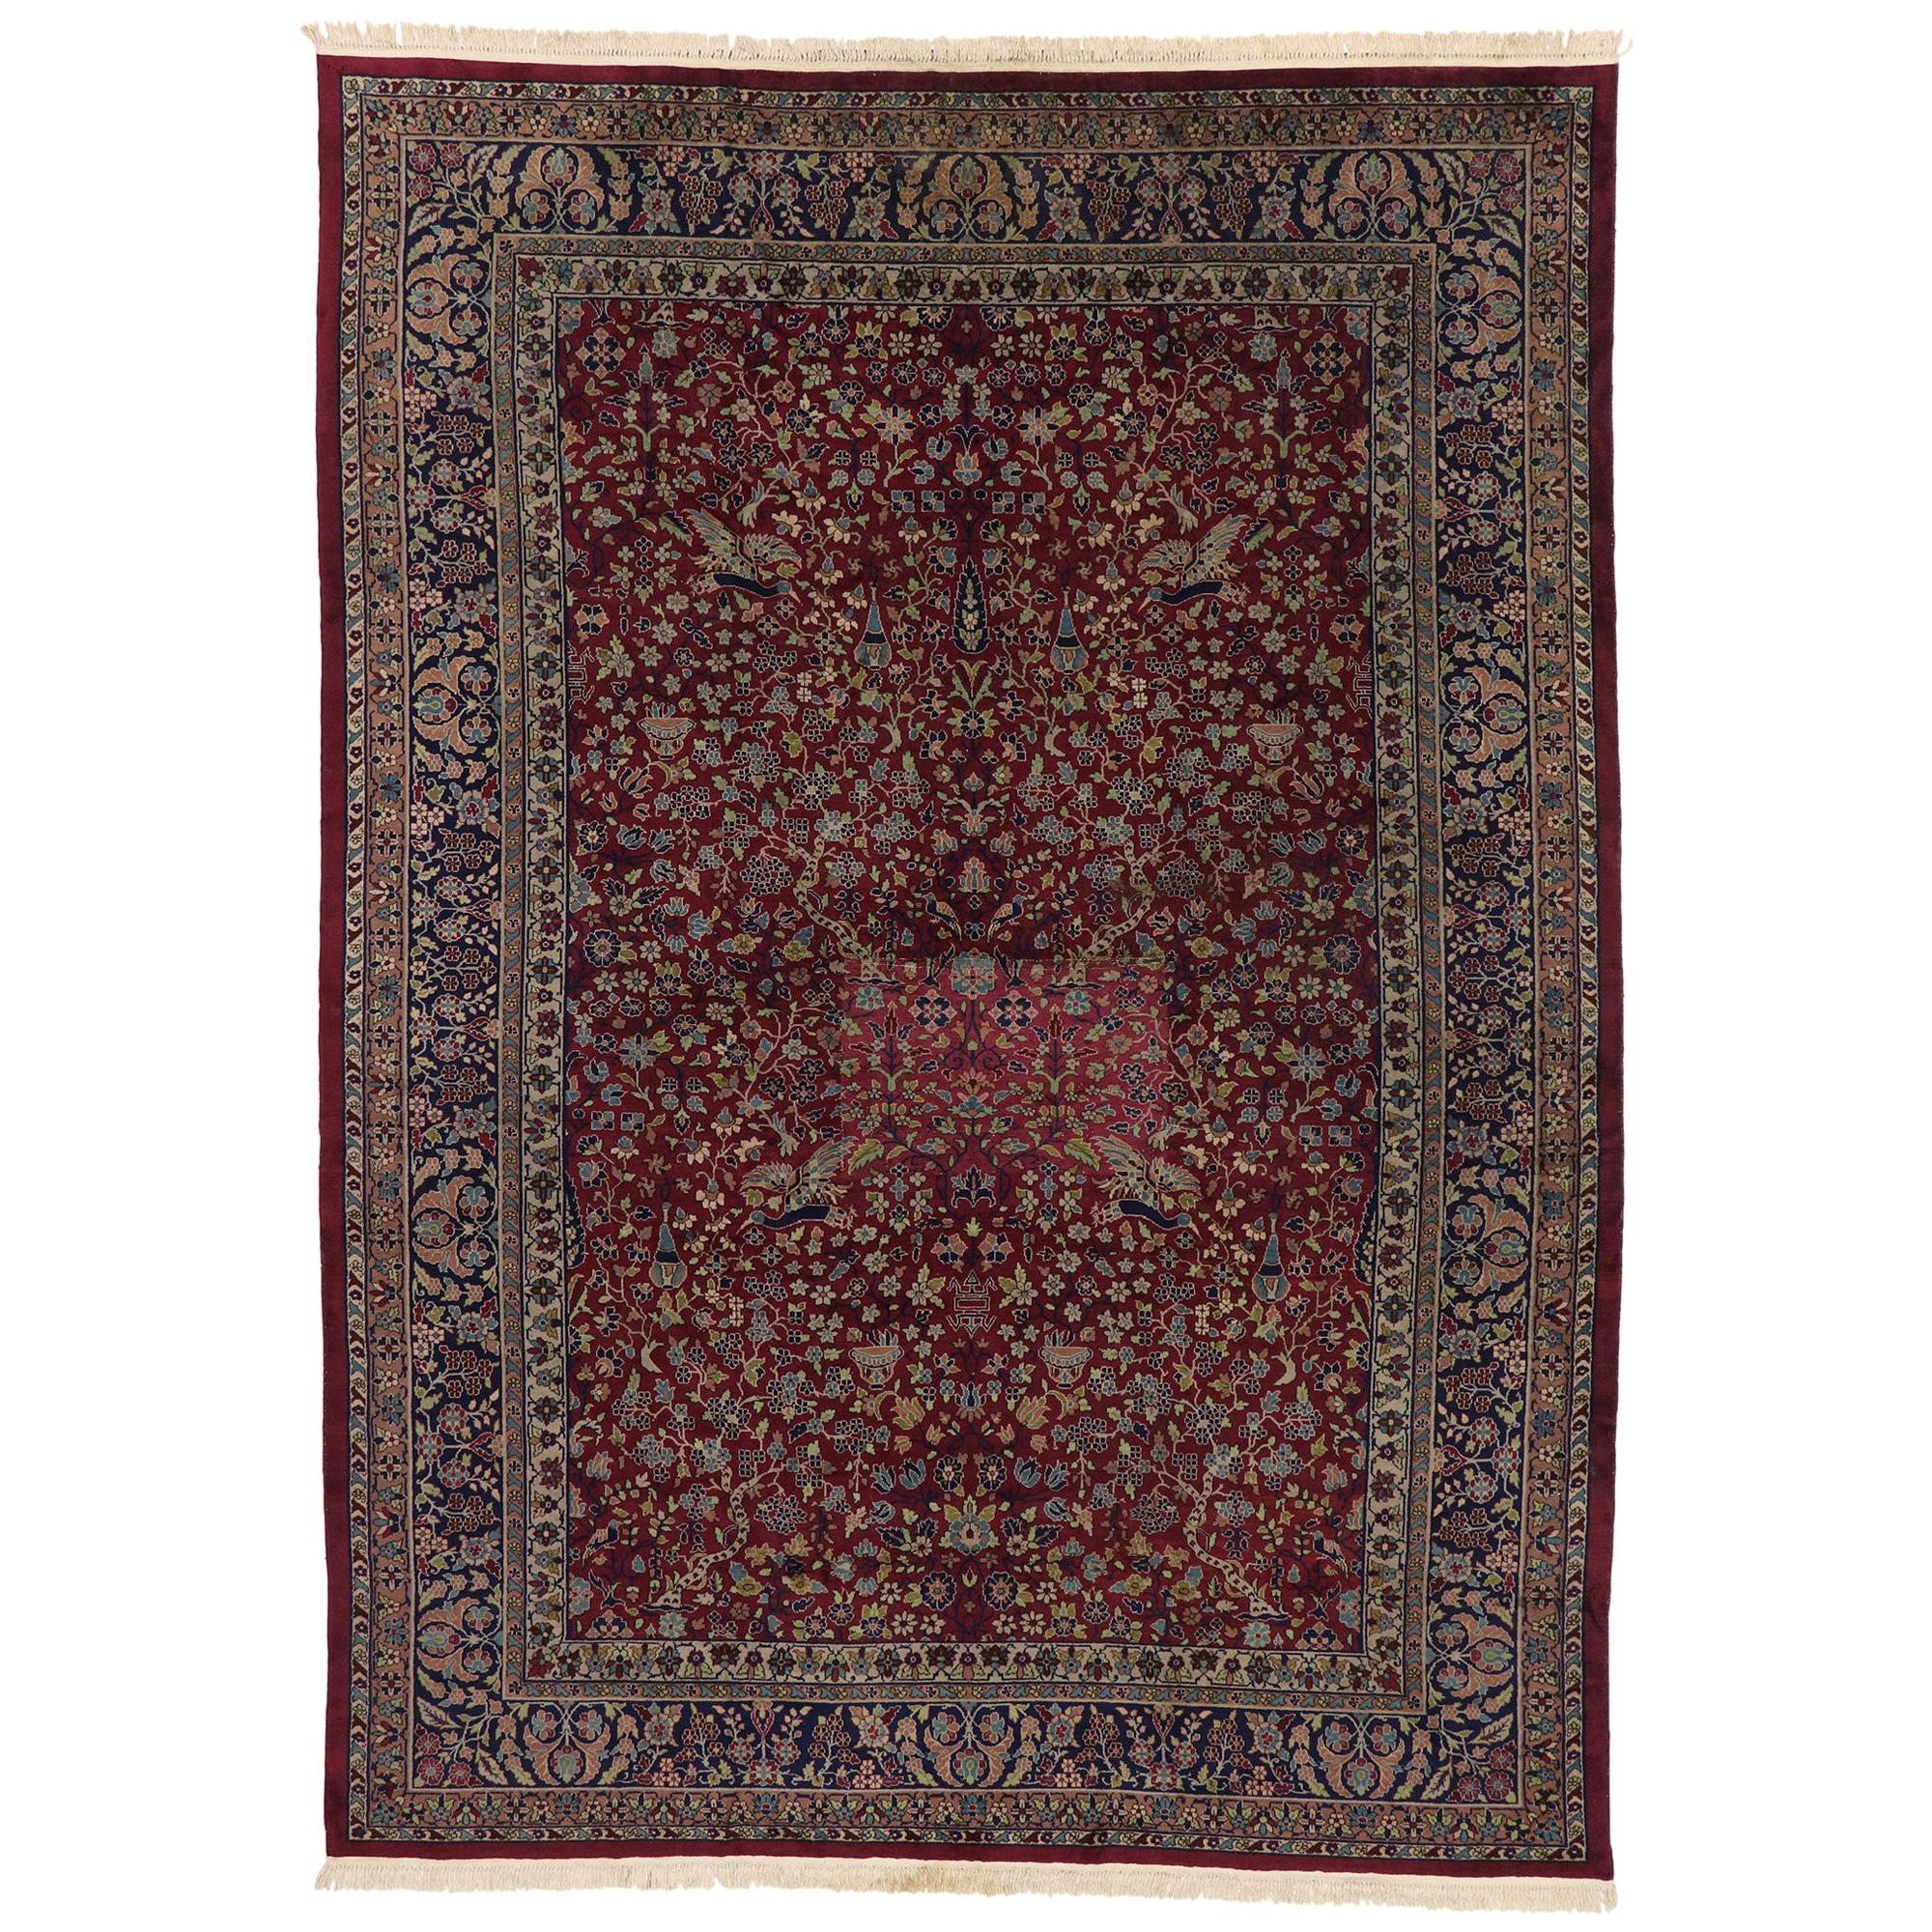 Antiker indischer Agra-Teppich im viktorianischen Renaissance-Stil